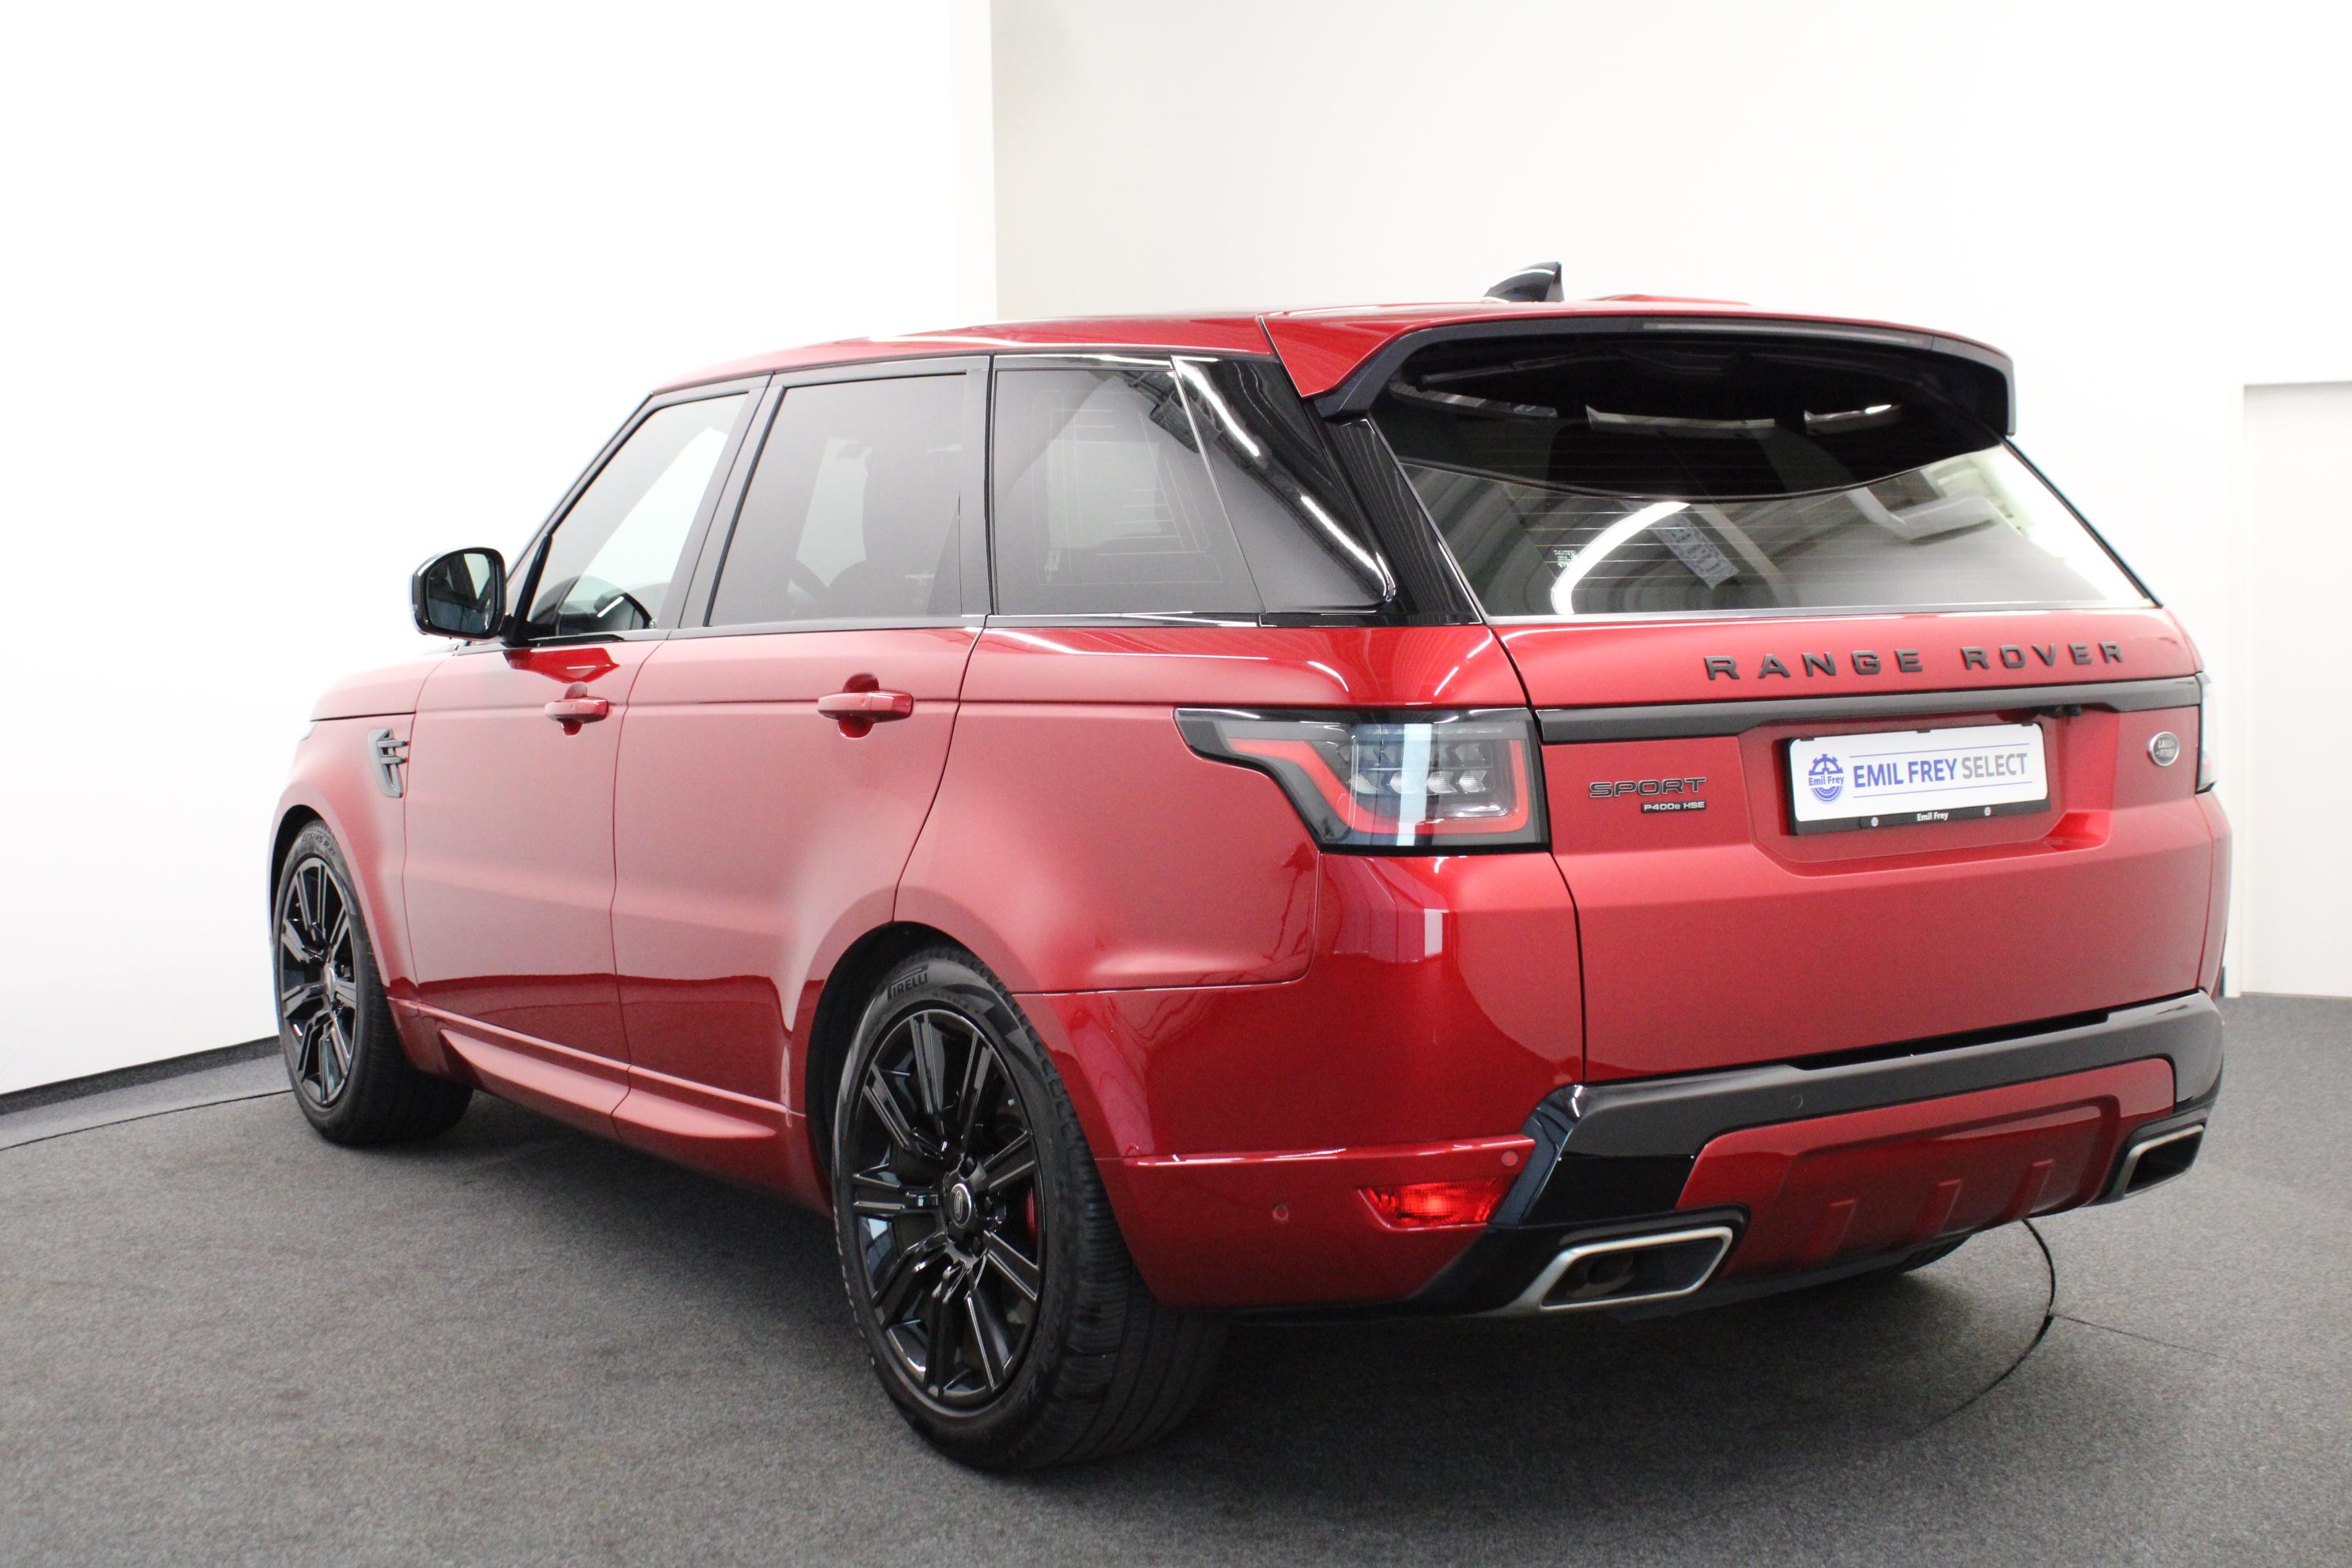 Land Rover Range Rover Sport, als Occasion oder Neuwagen kaufen oder leasen